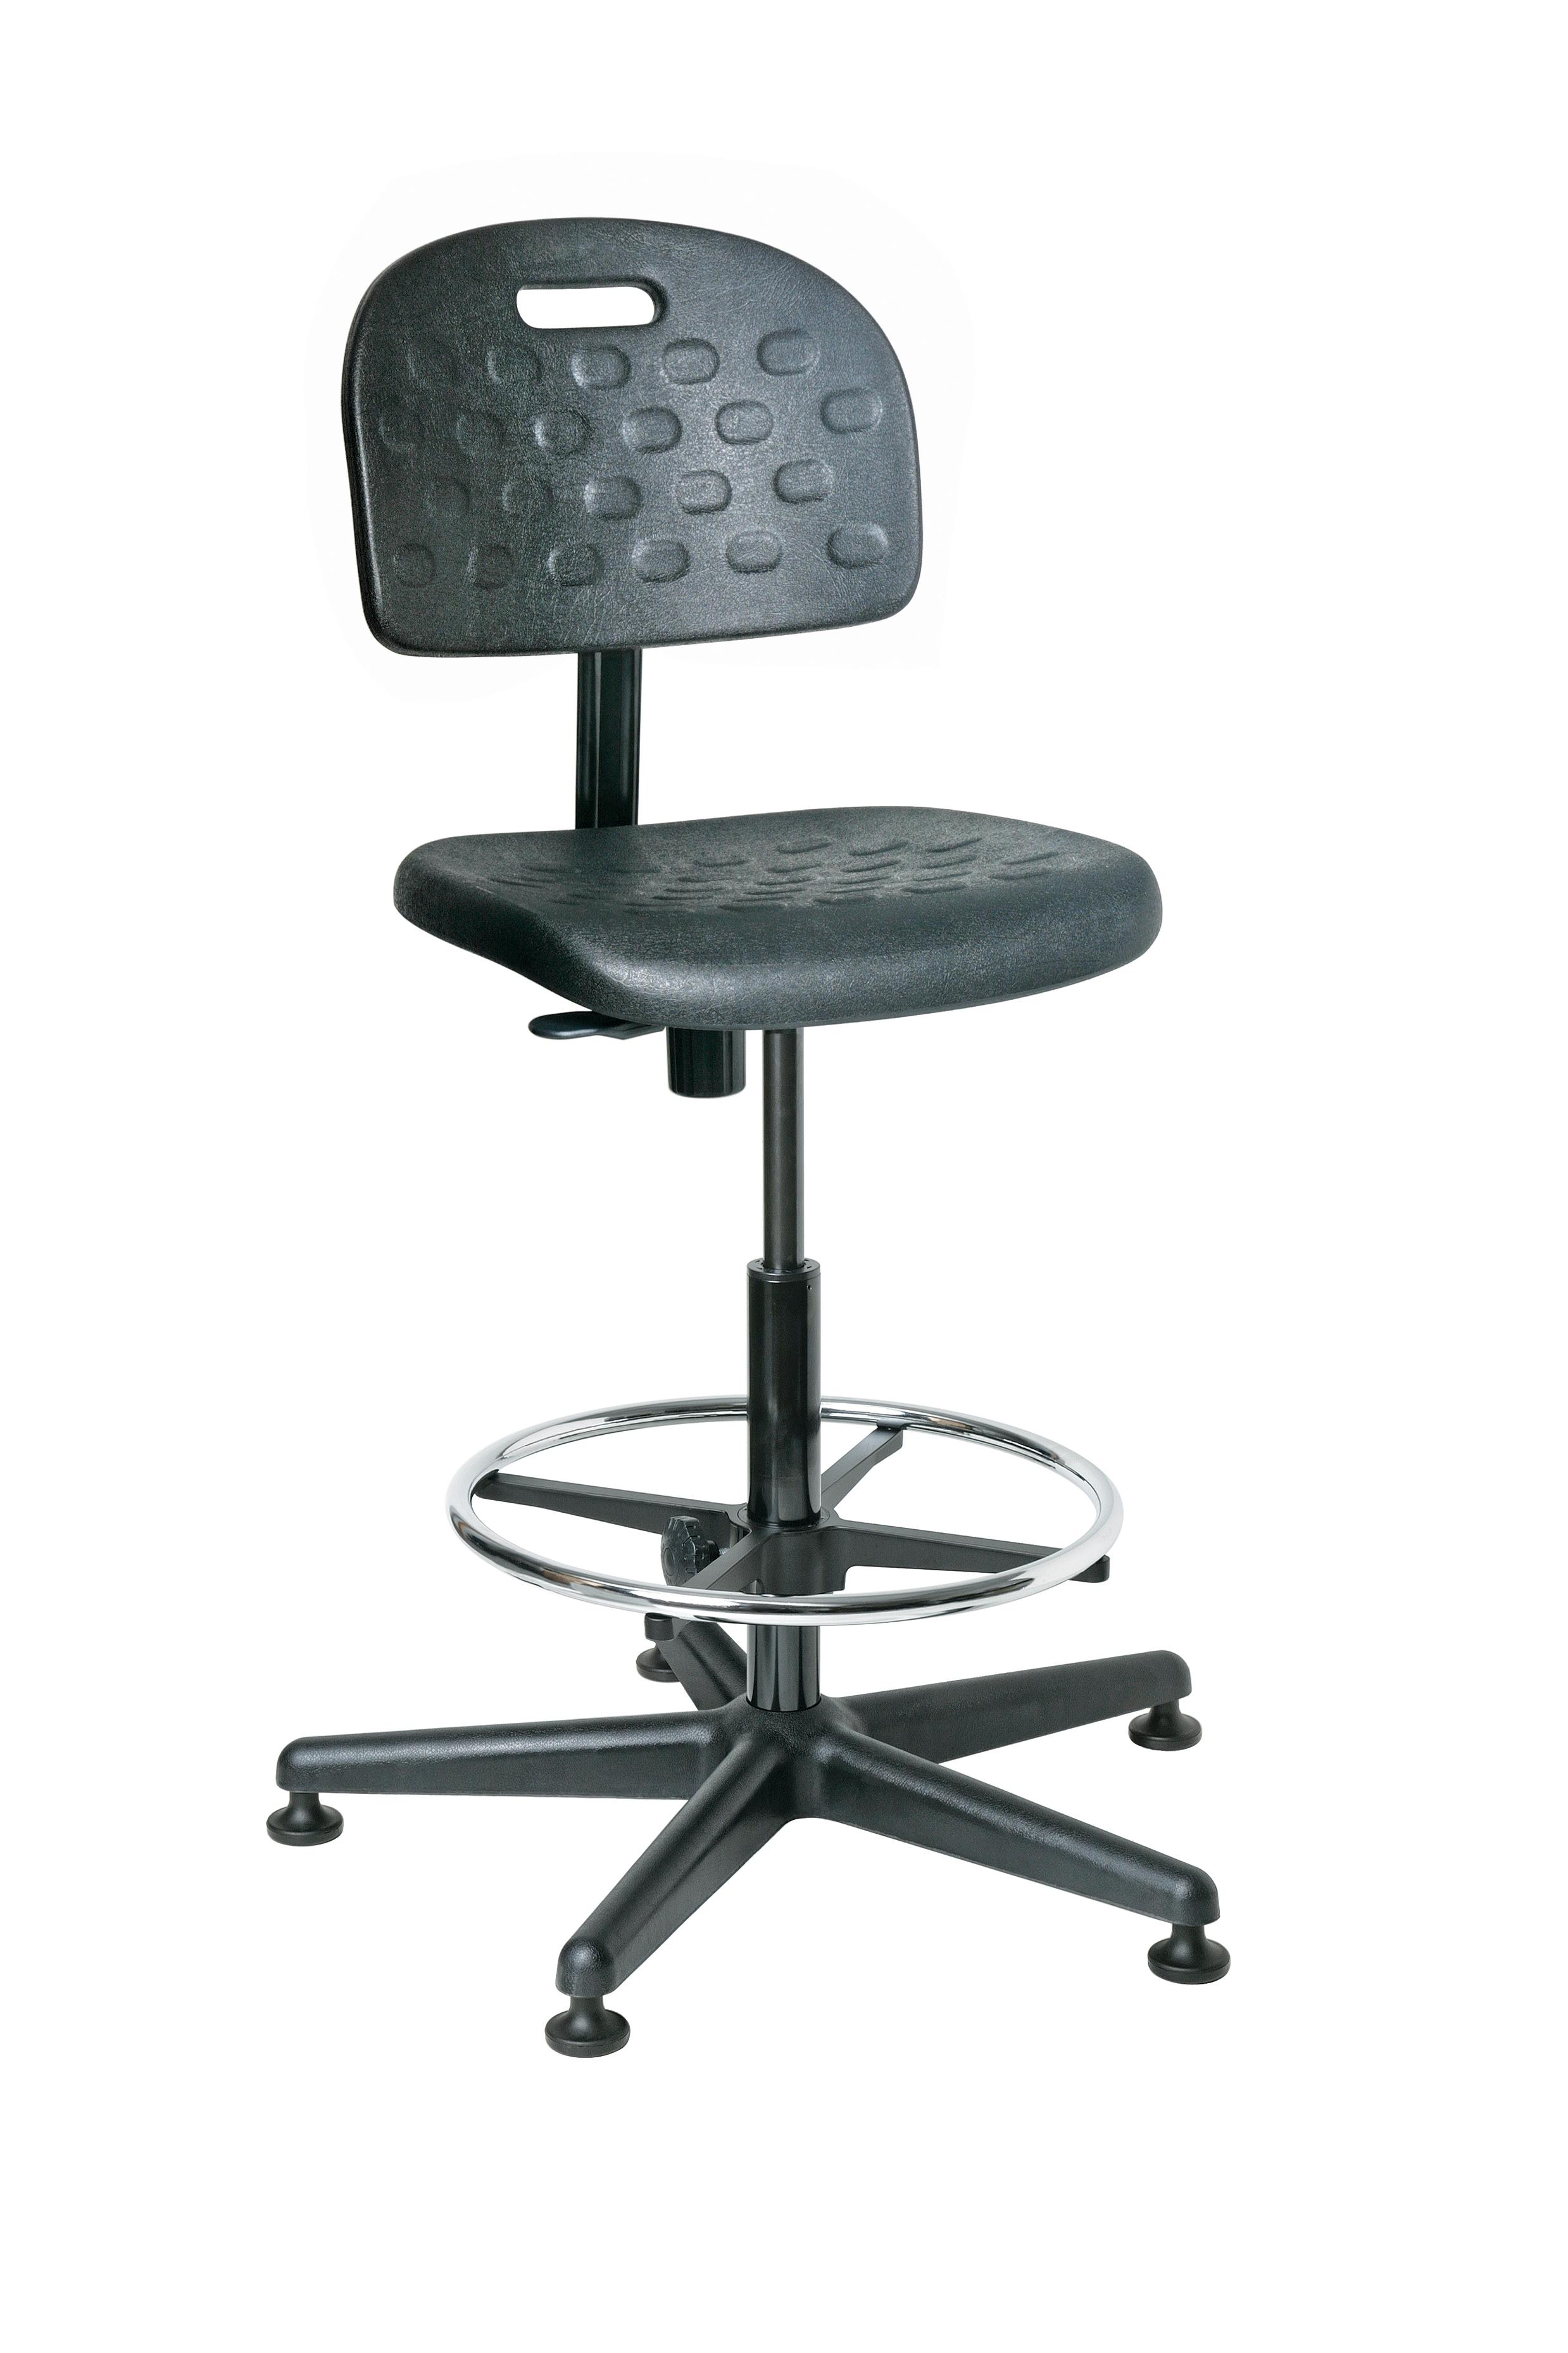 Bevco V7507mg V7 Polyurethane Chair 21 25 32